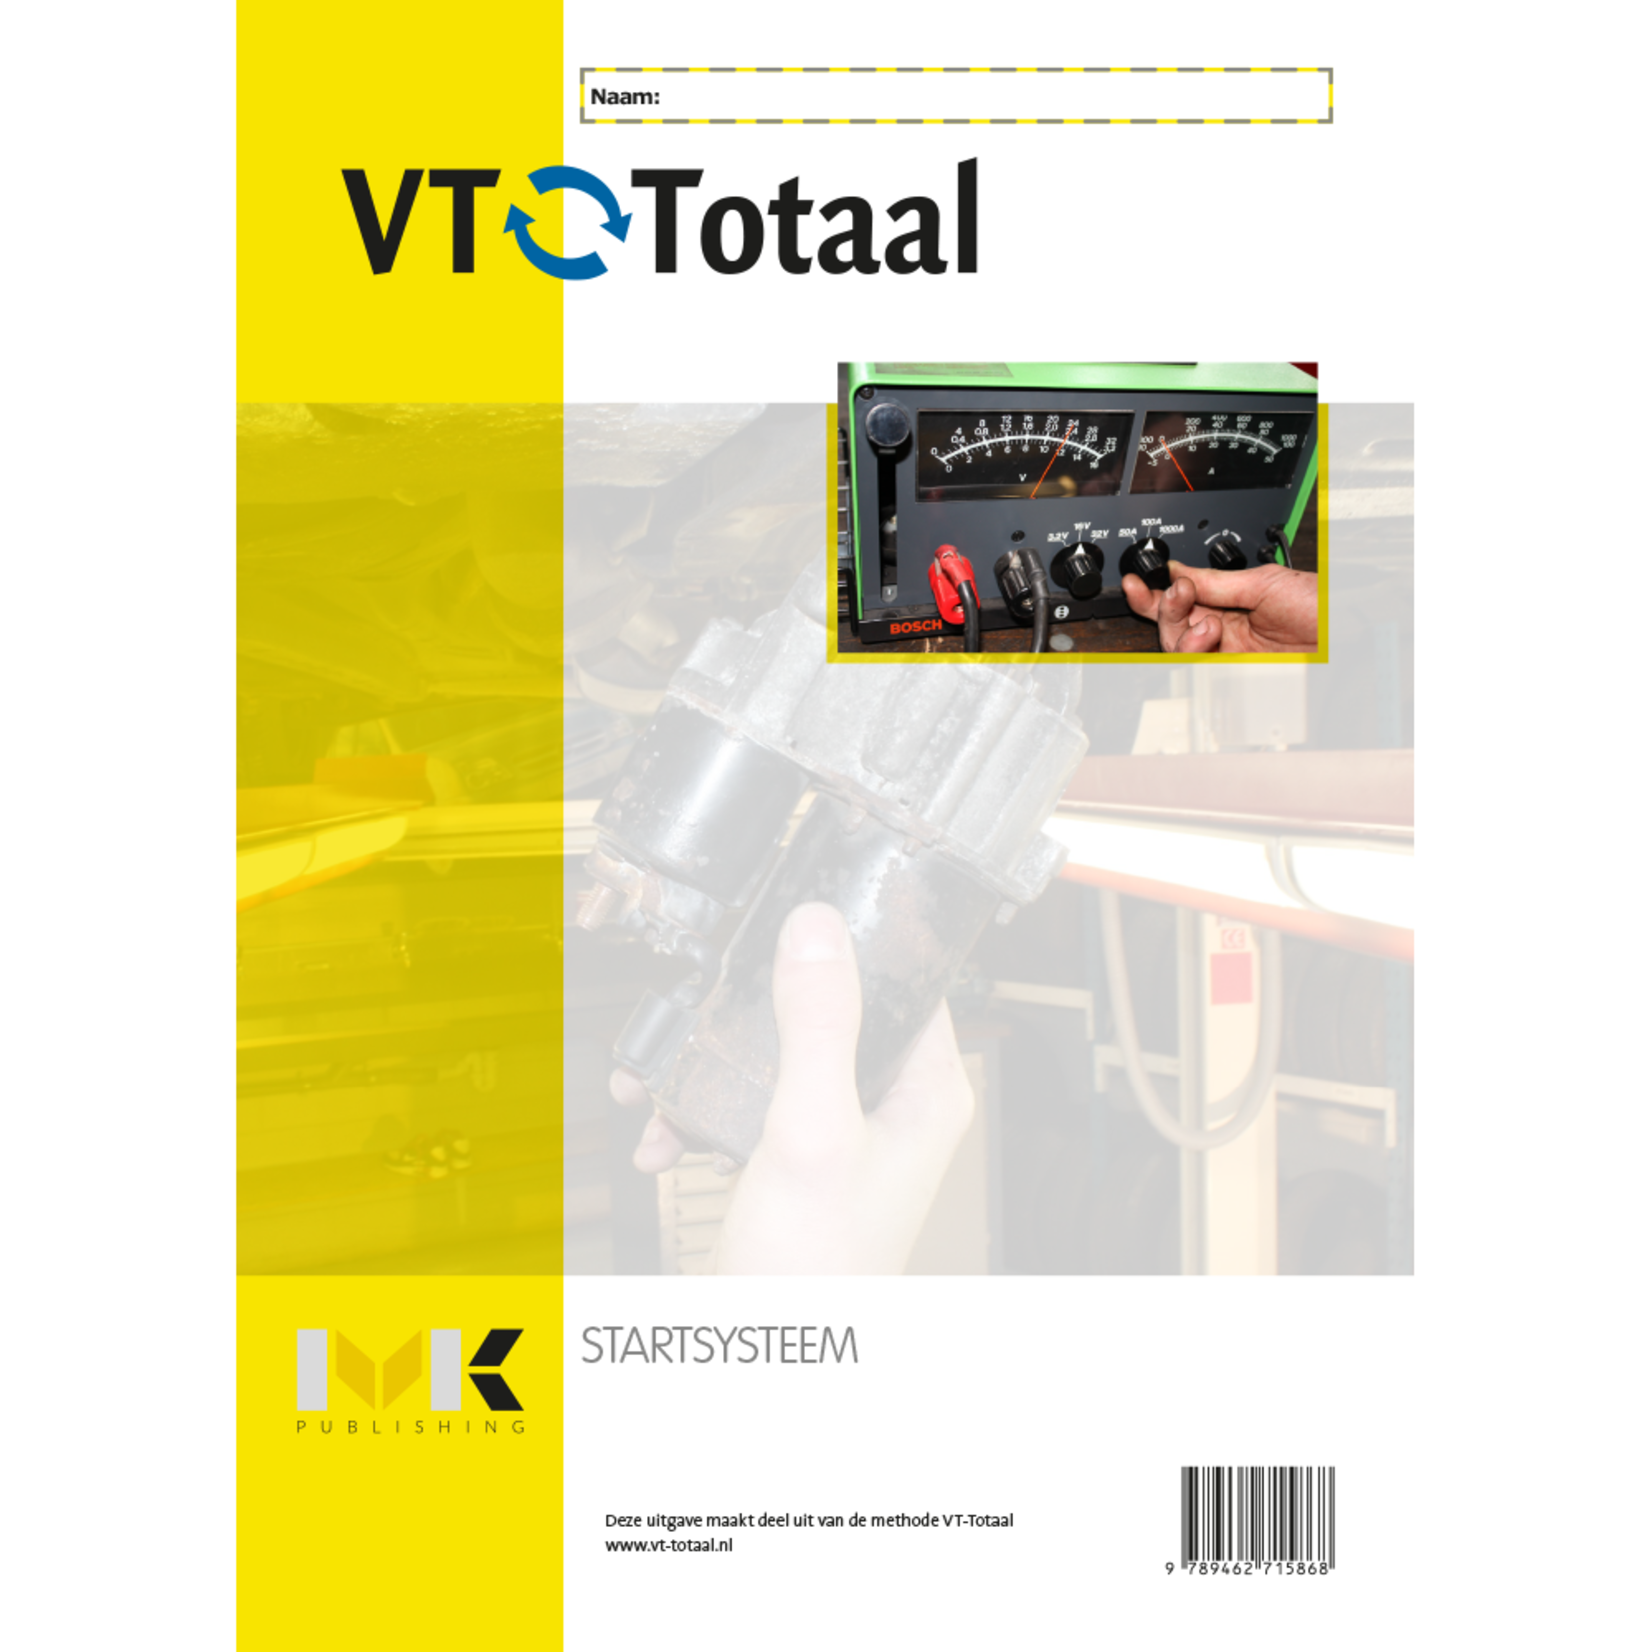 VT-Totaal Startsysteem